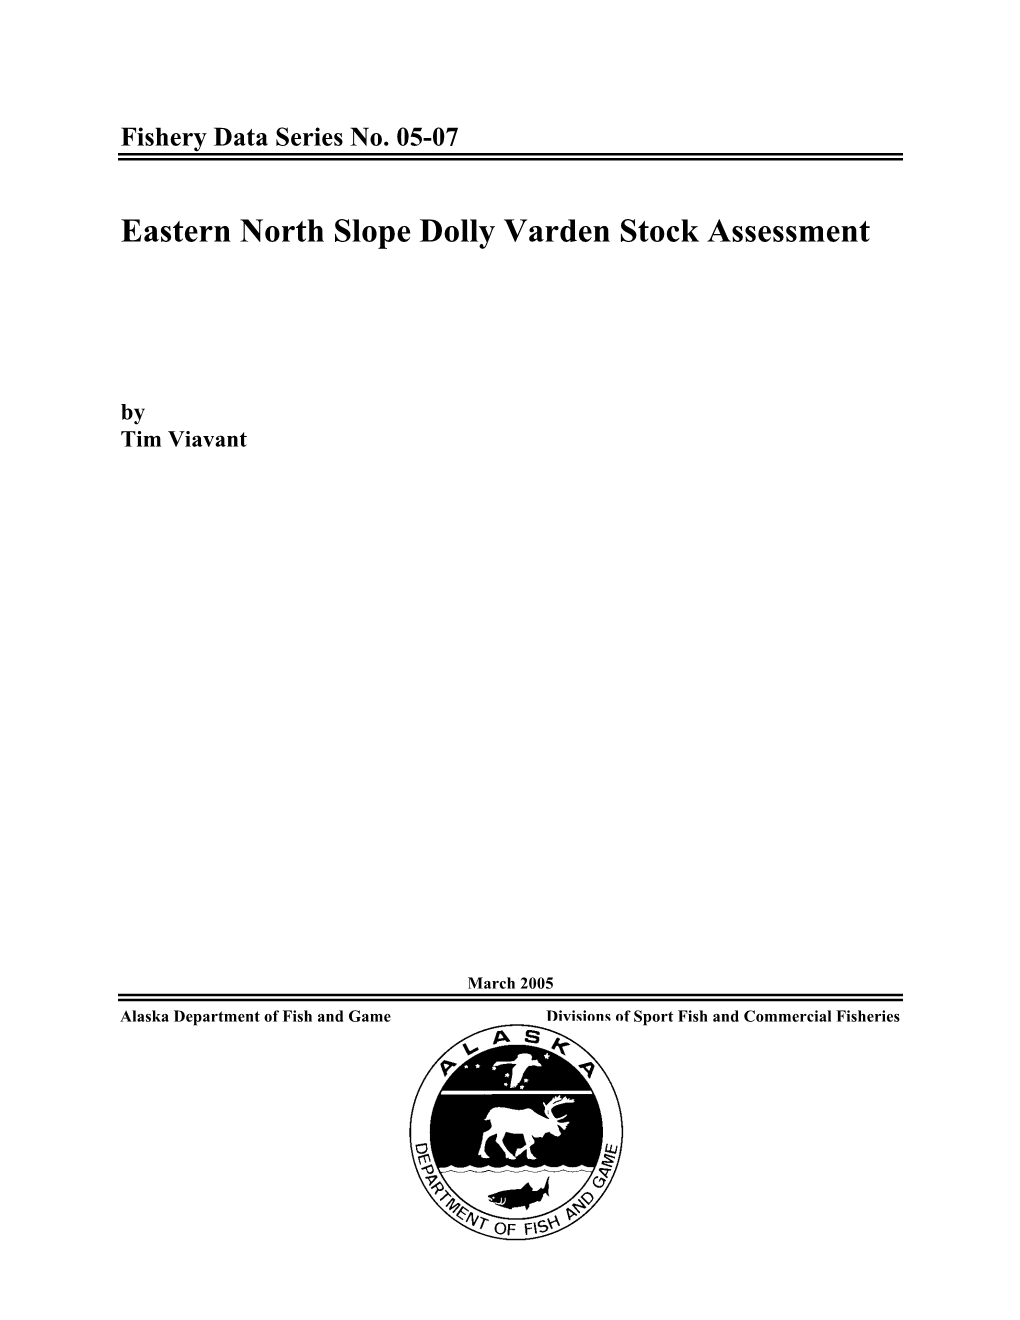 Eastern North Slope Dolly Varden Stock Assessment